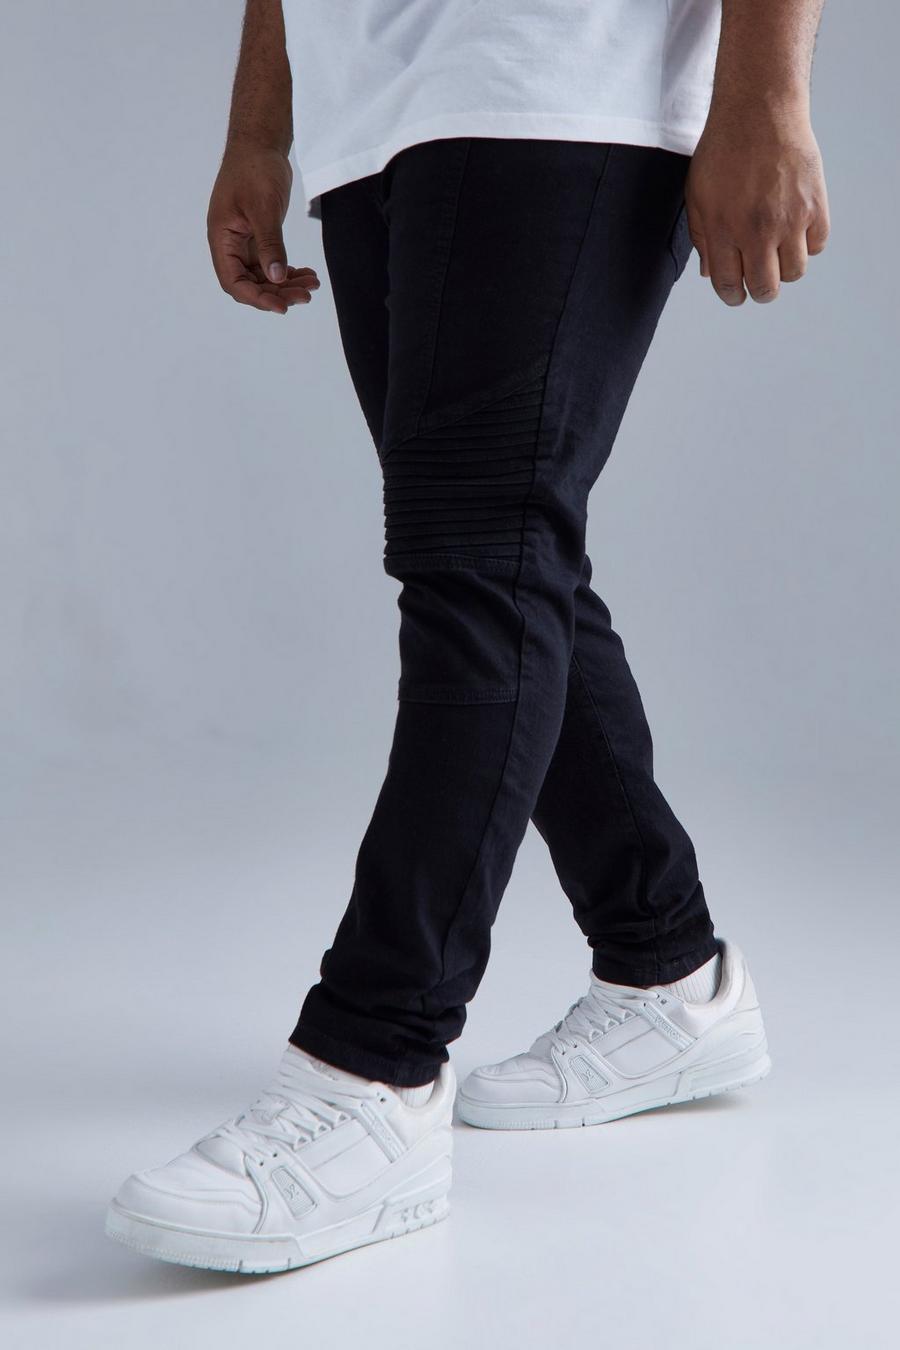 שחור אמיתי ג'ינס סקיני נמתח בסגנון אופנוענים, מידות גדולות